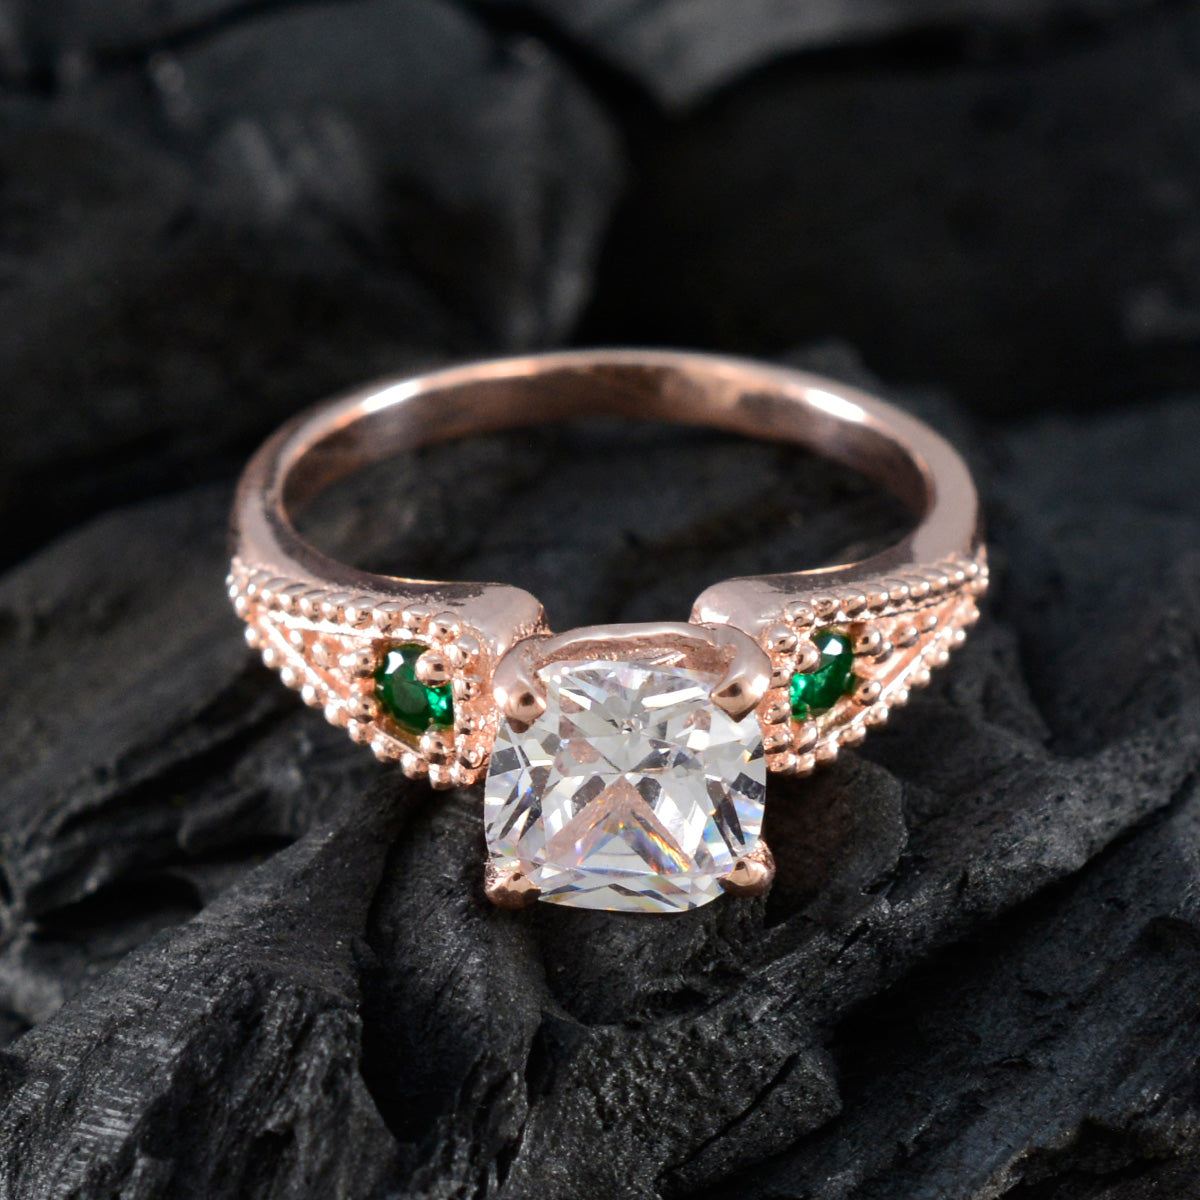 Riyo Desirable Silberring mit Rosévergoldung, Smaragd-CZ-Stein, kissenförmige Krappenfassung, Brautschmuck, Valentinstagsring